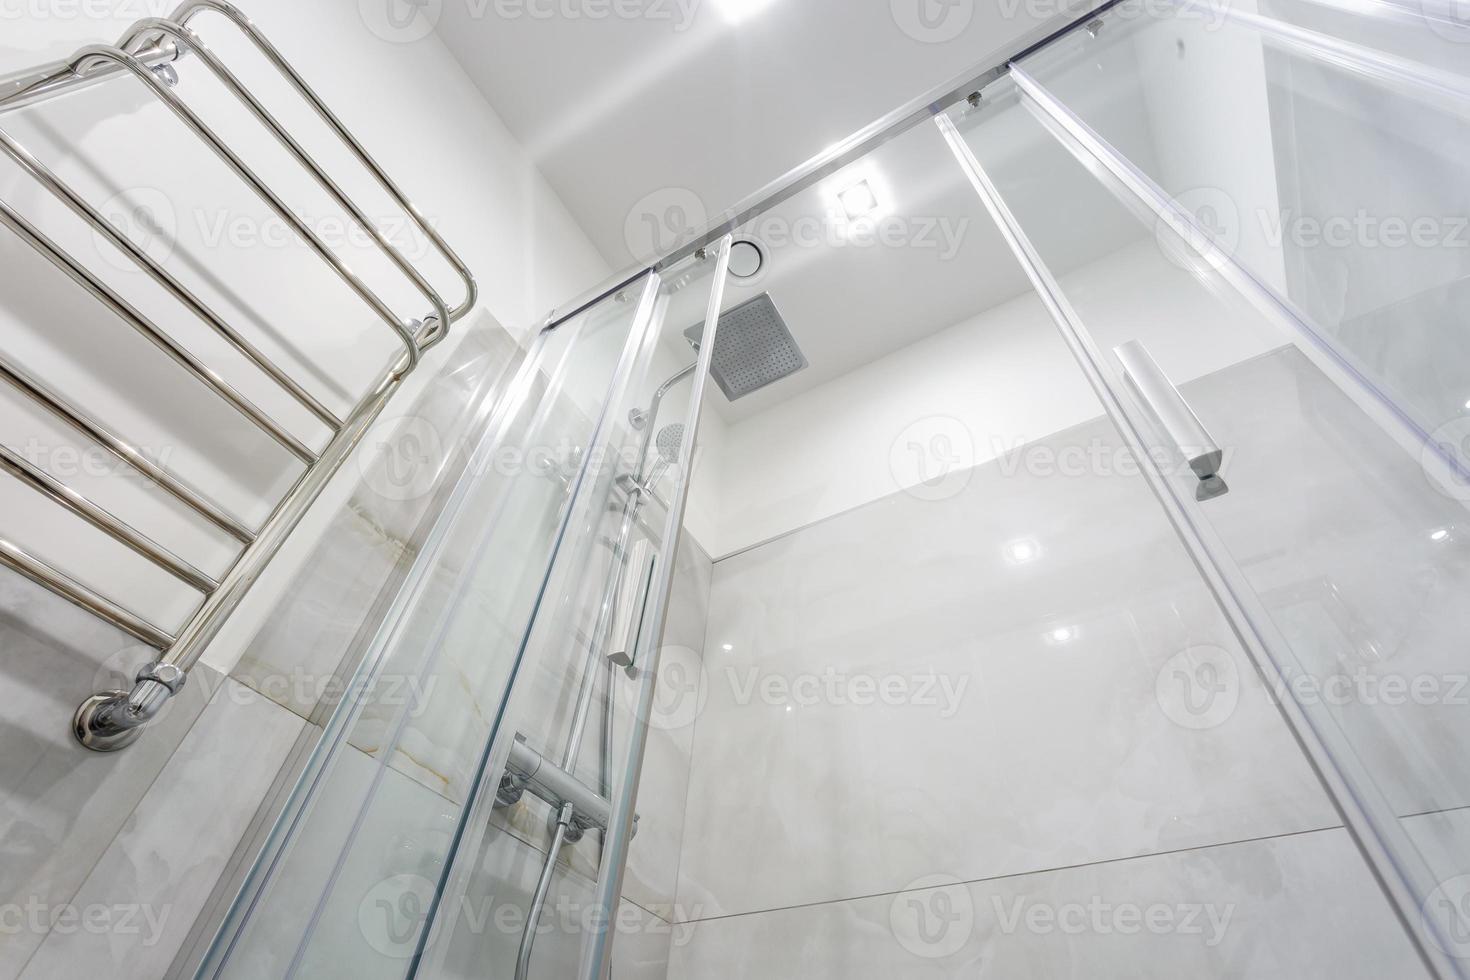 détails de la cabine de douche d'angle avec fixation murale pour douche et lavabo avec robinet dans une salle de bains chère photo